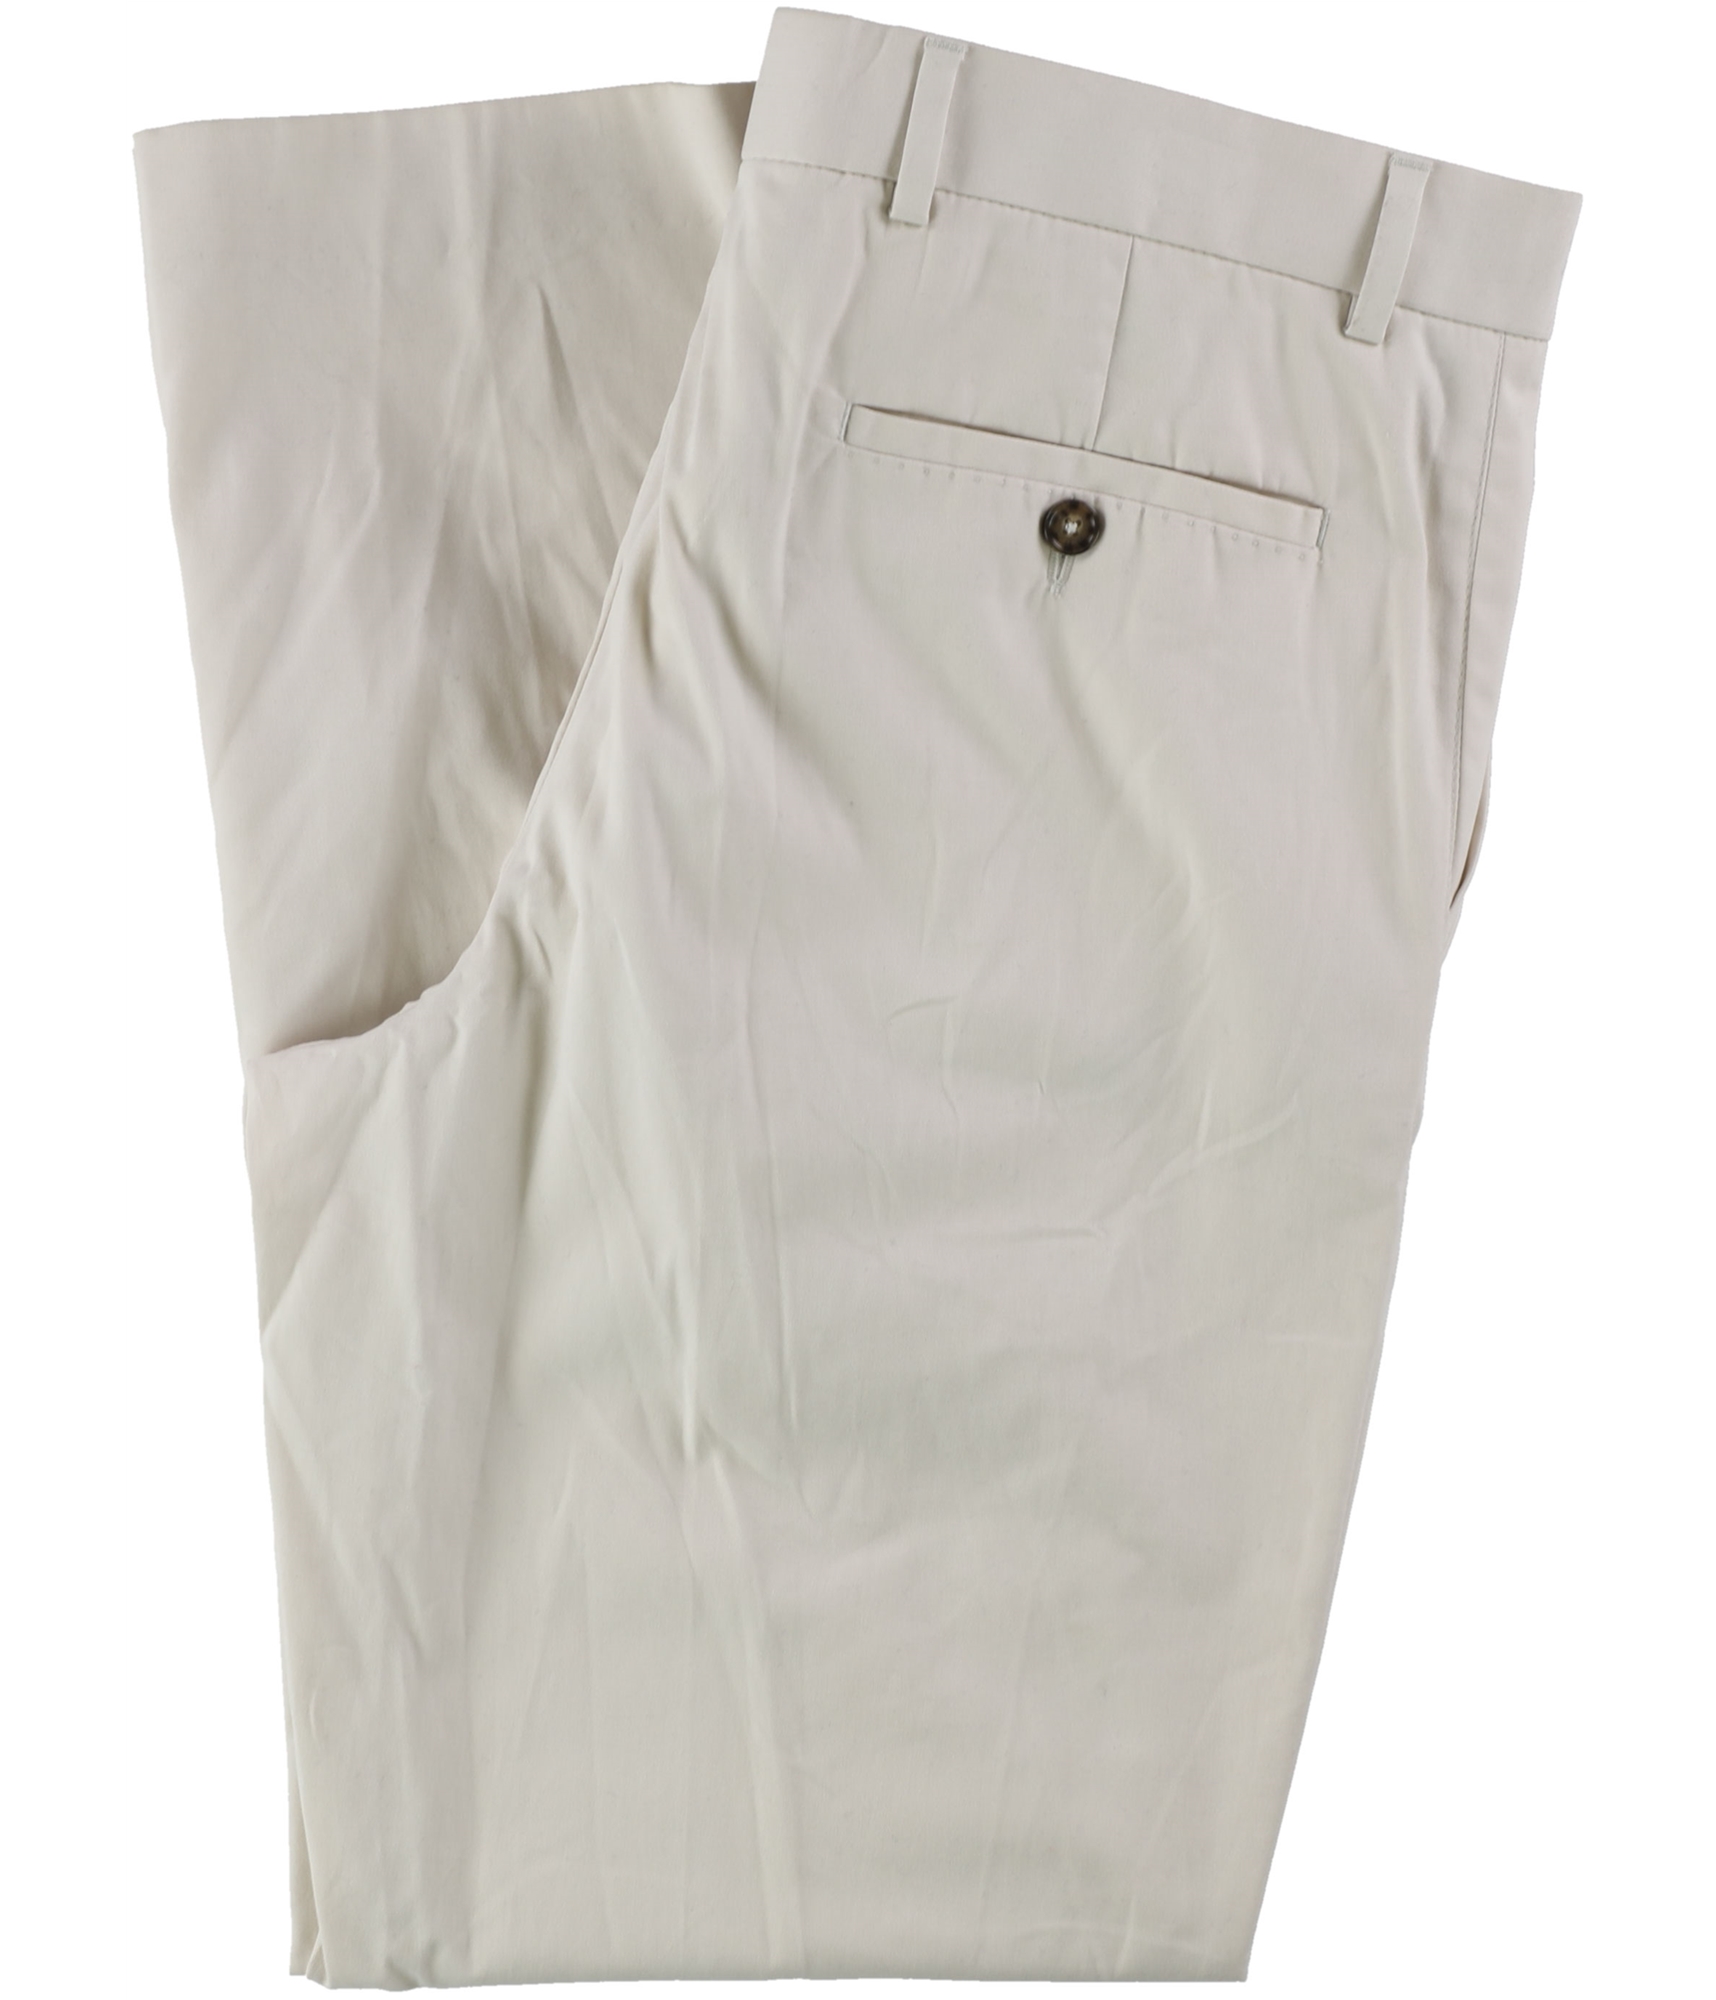 NWT Tasso Elba Men's Size 38 T x 34 White Fog Signature Chino Pants $79.50